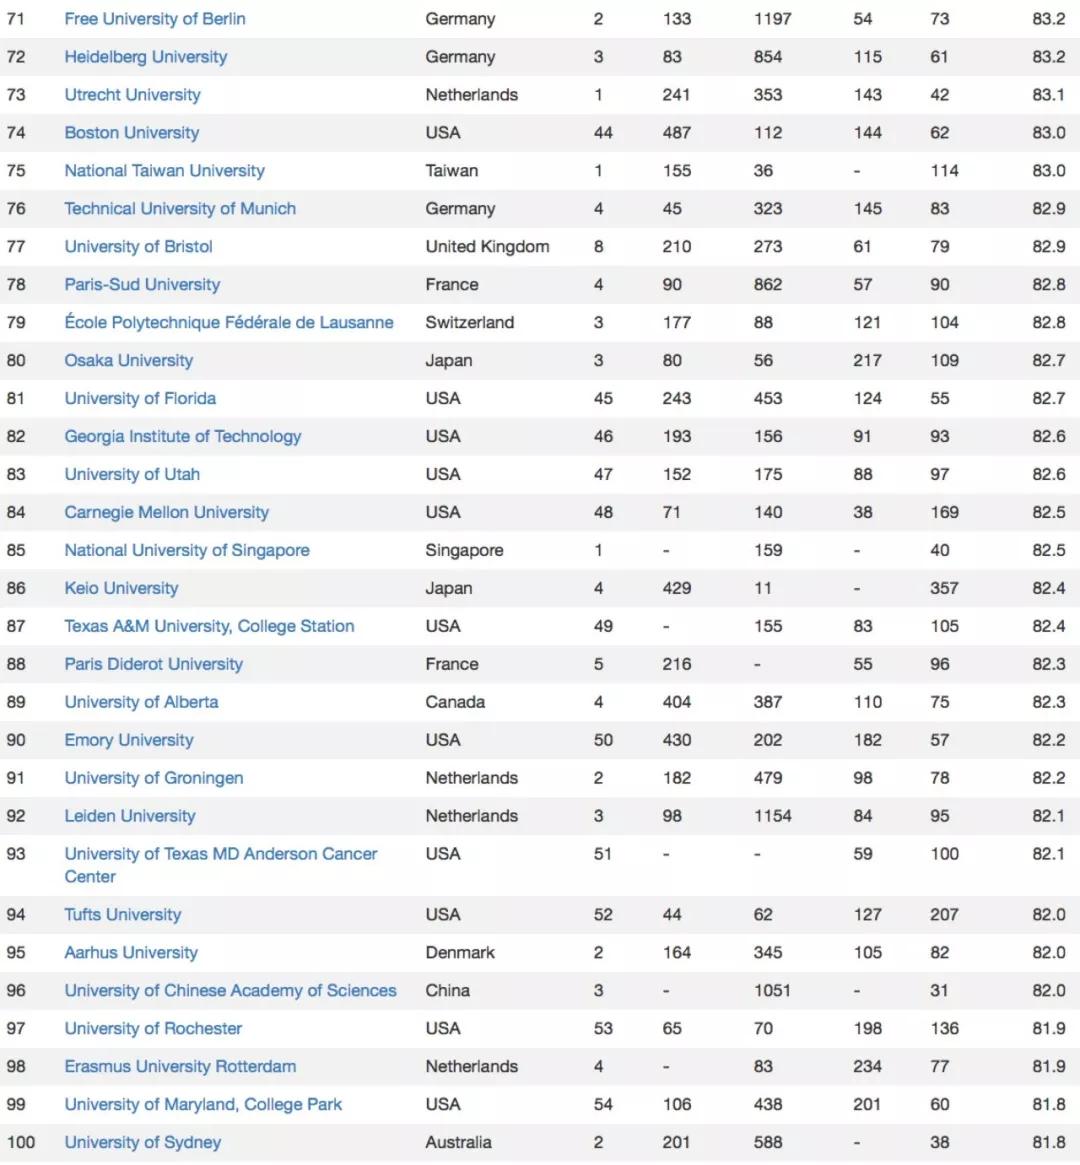 2019年美国宾大学排行榜_USNews 2019 世界大学排行榜出炉,临床领域全球前